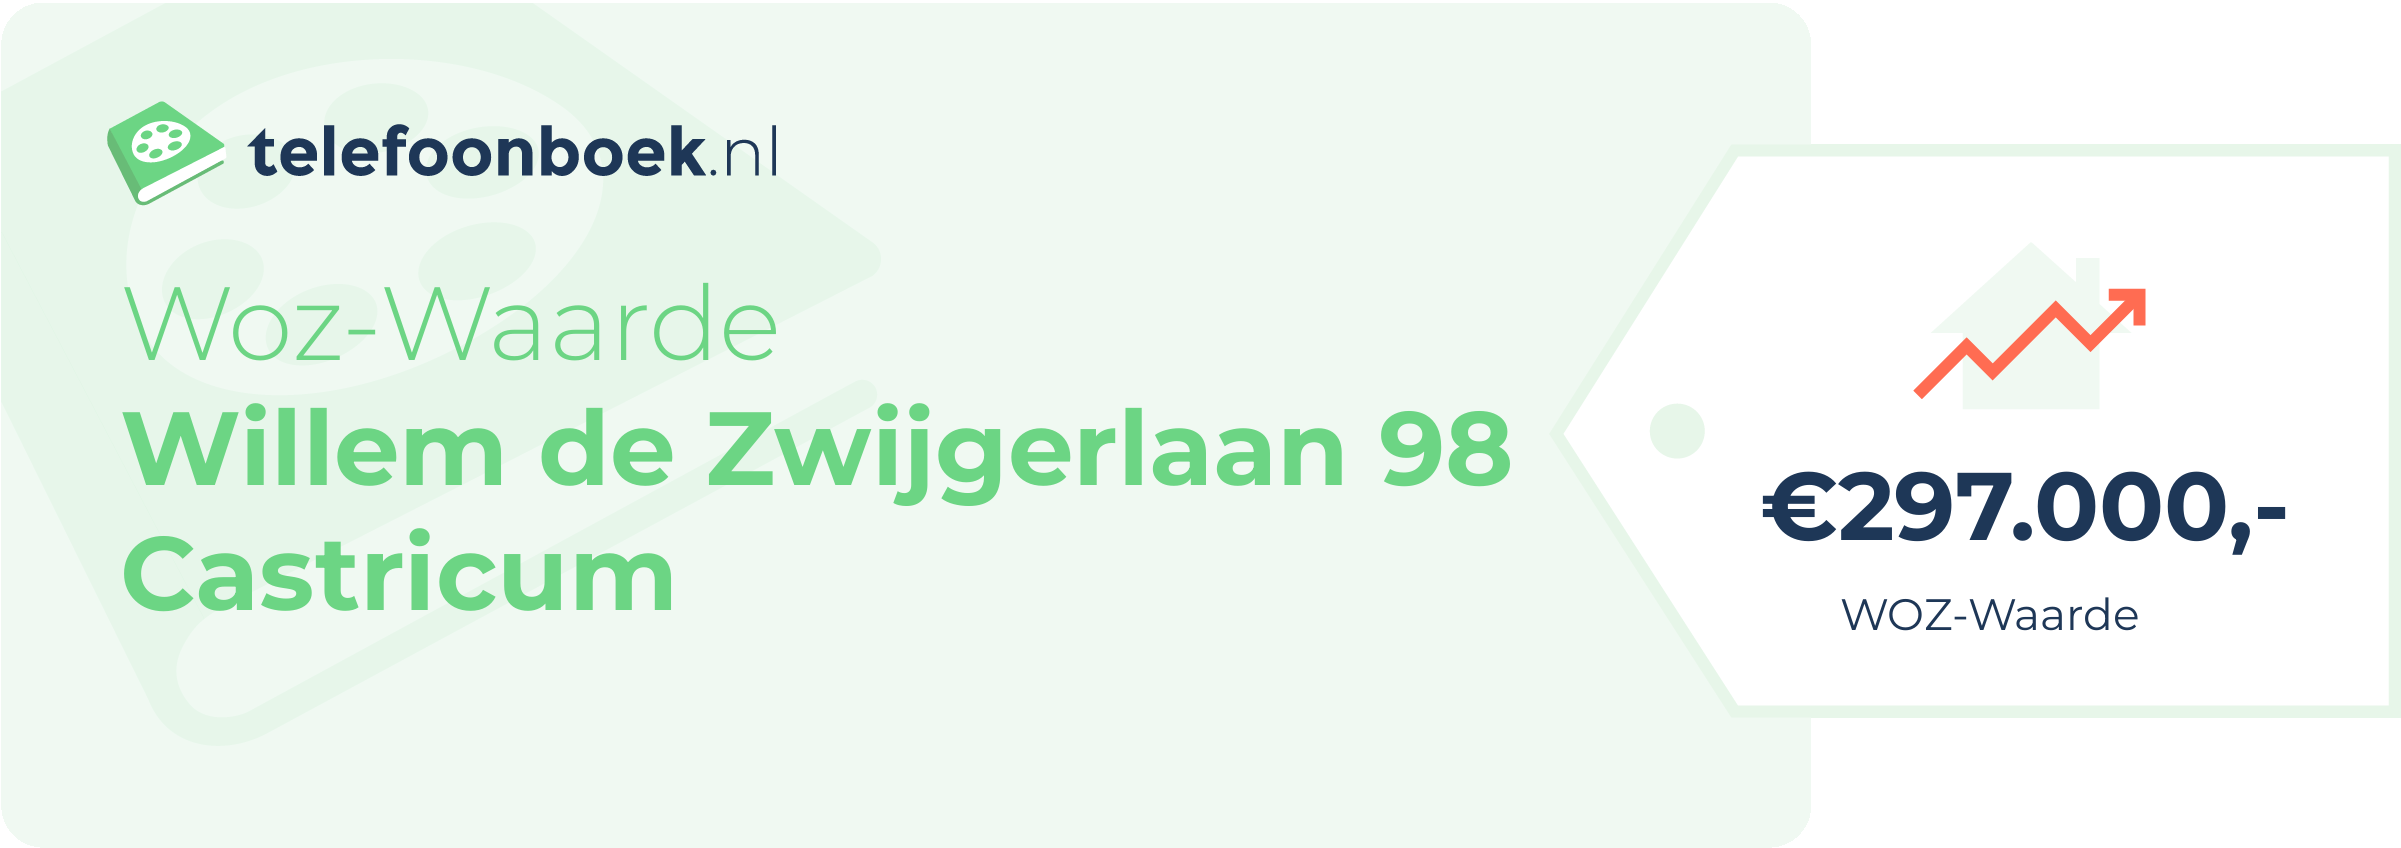 WOZ-waarde Willem De Zwijgerlaan 98 Castricum